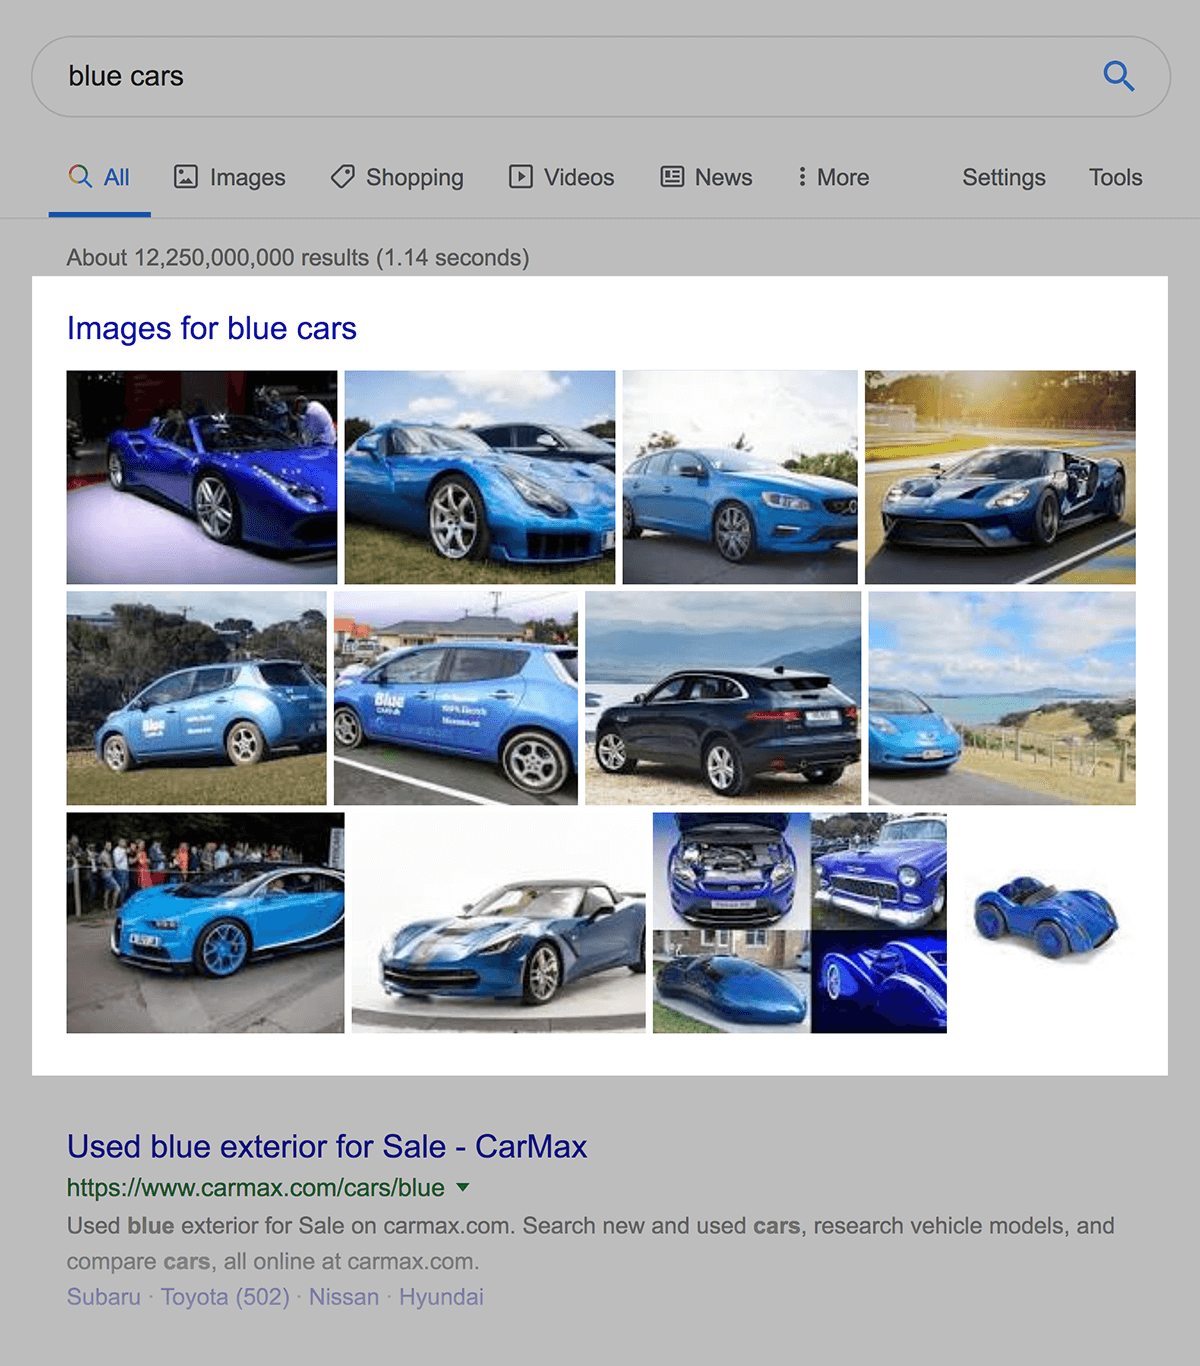 Google Images result for "blue cars"